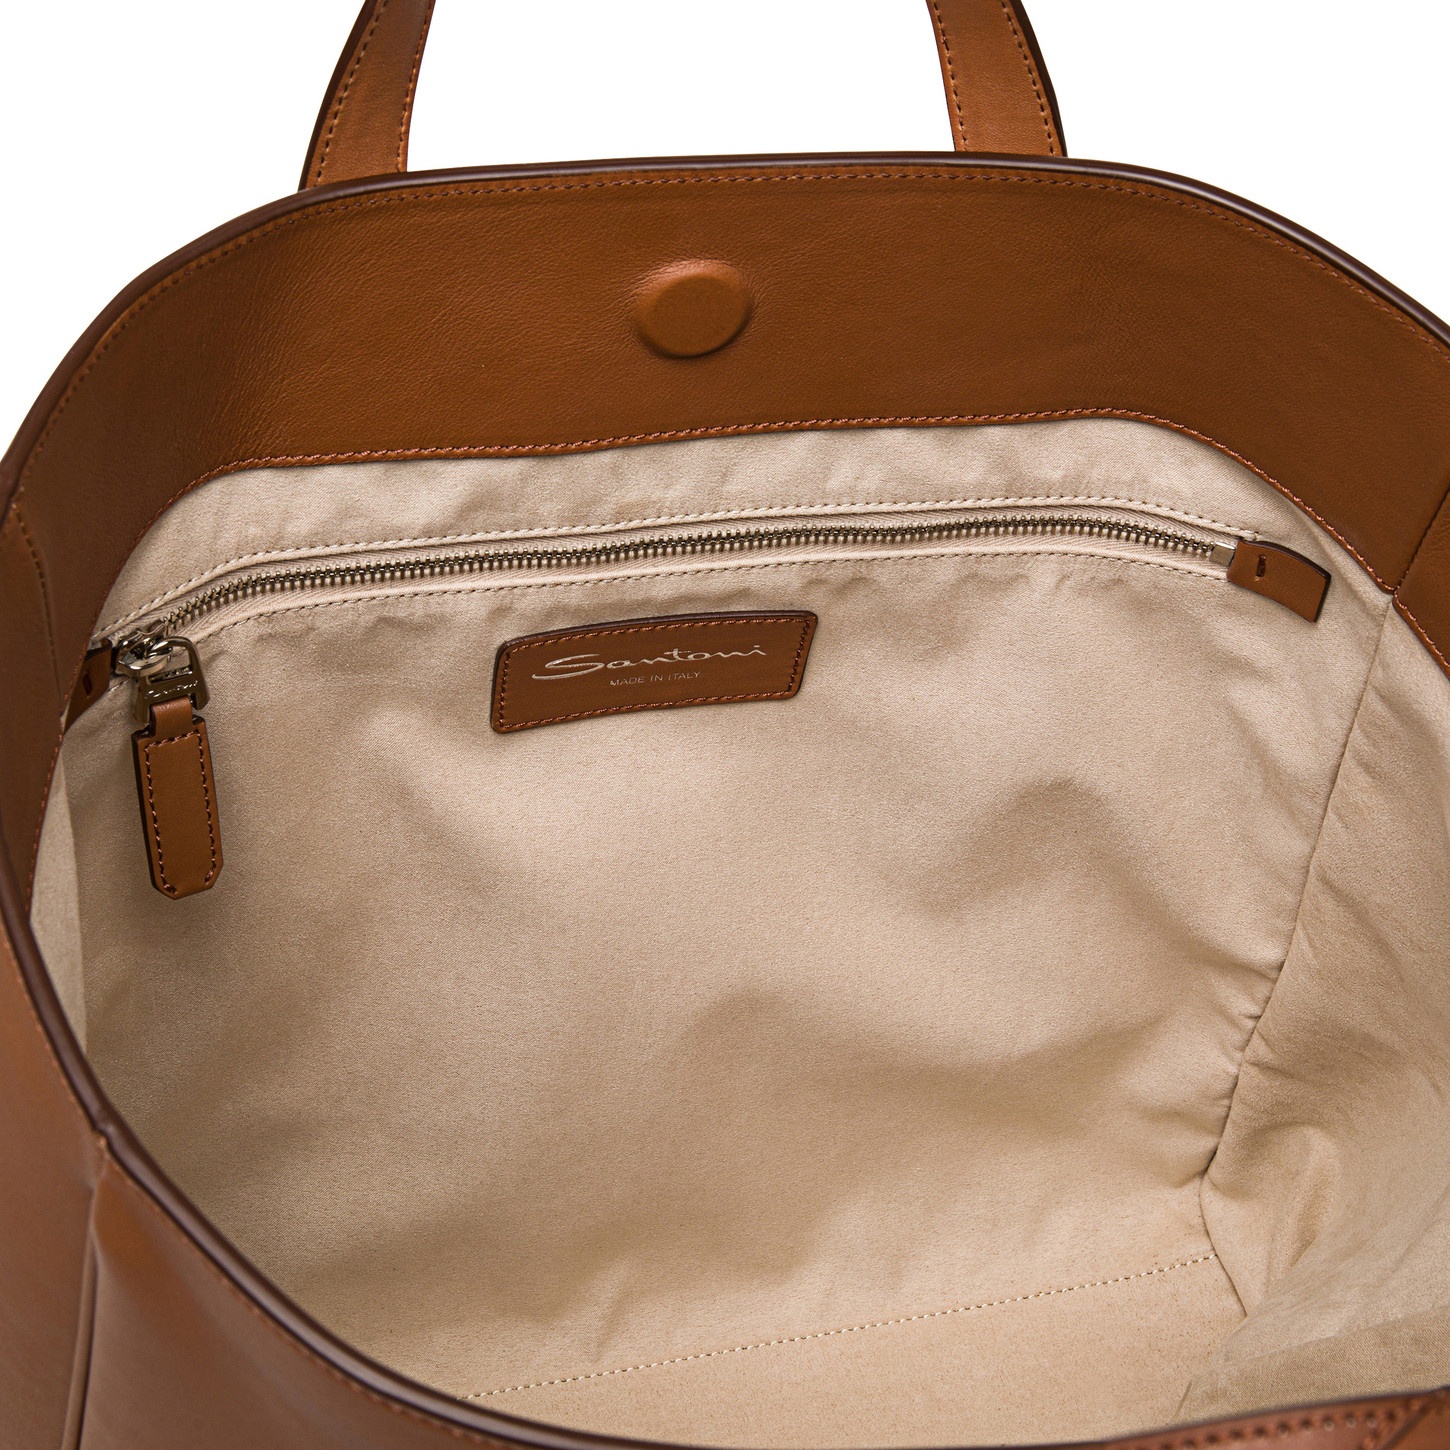 Brown leather handbag - 3